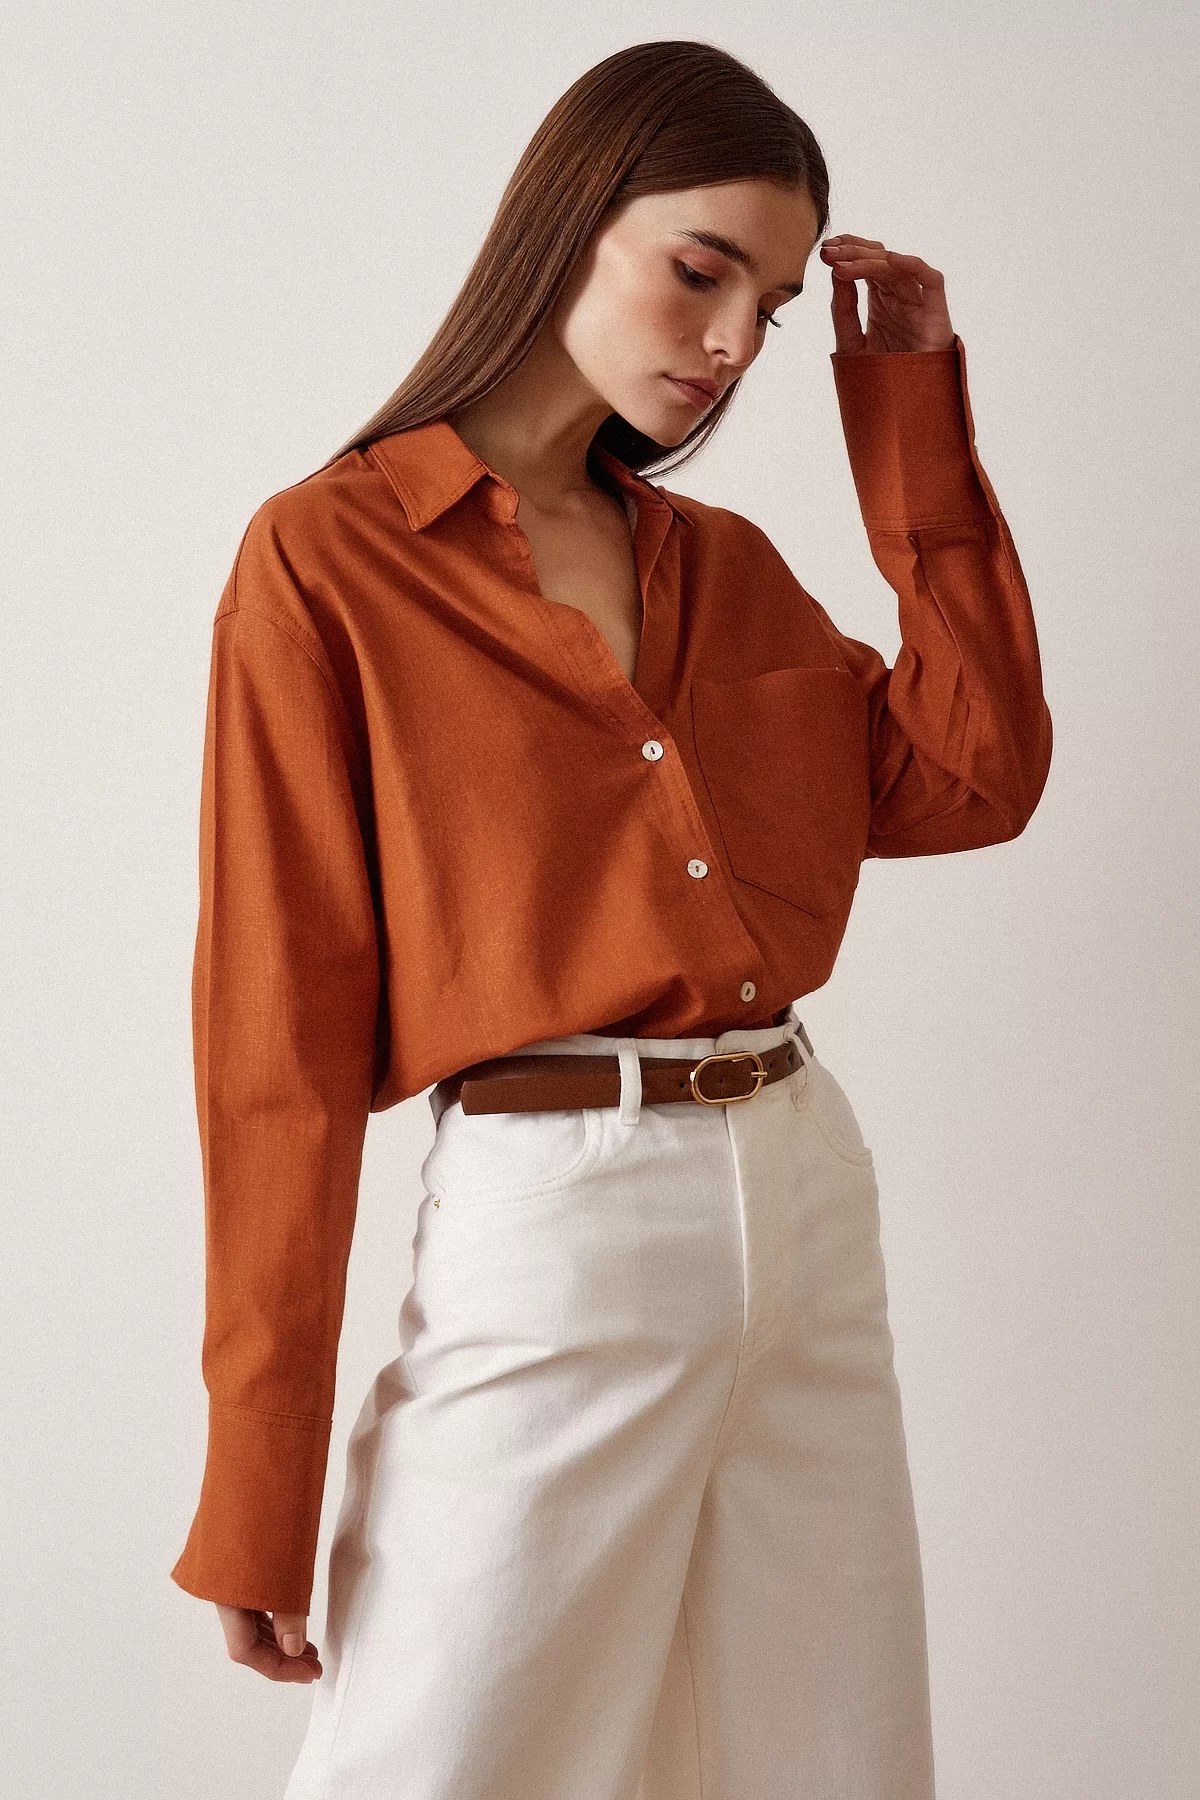 Блуза из льна с одним карманом - Оранжевая